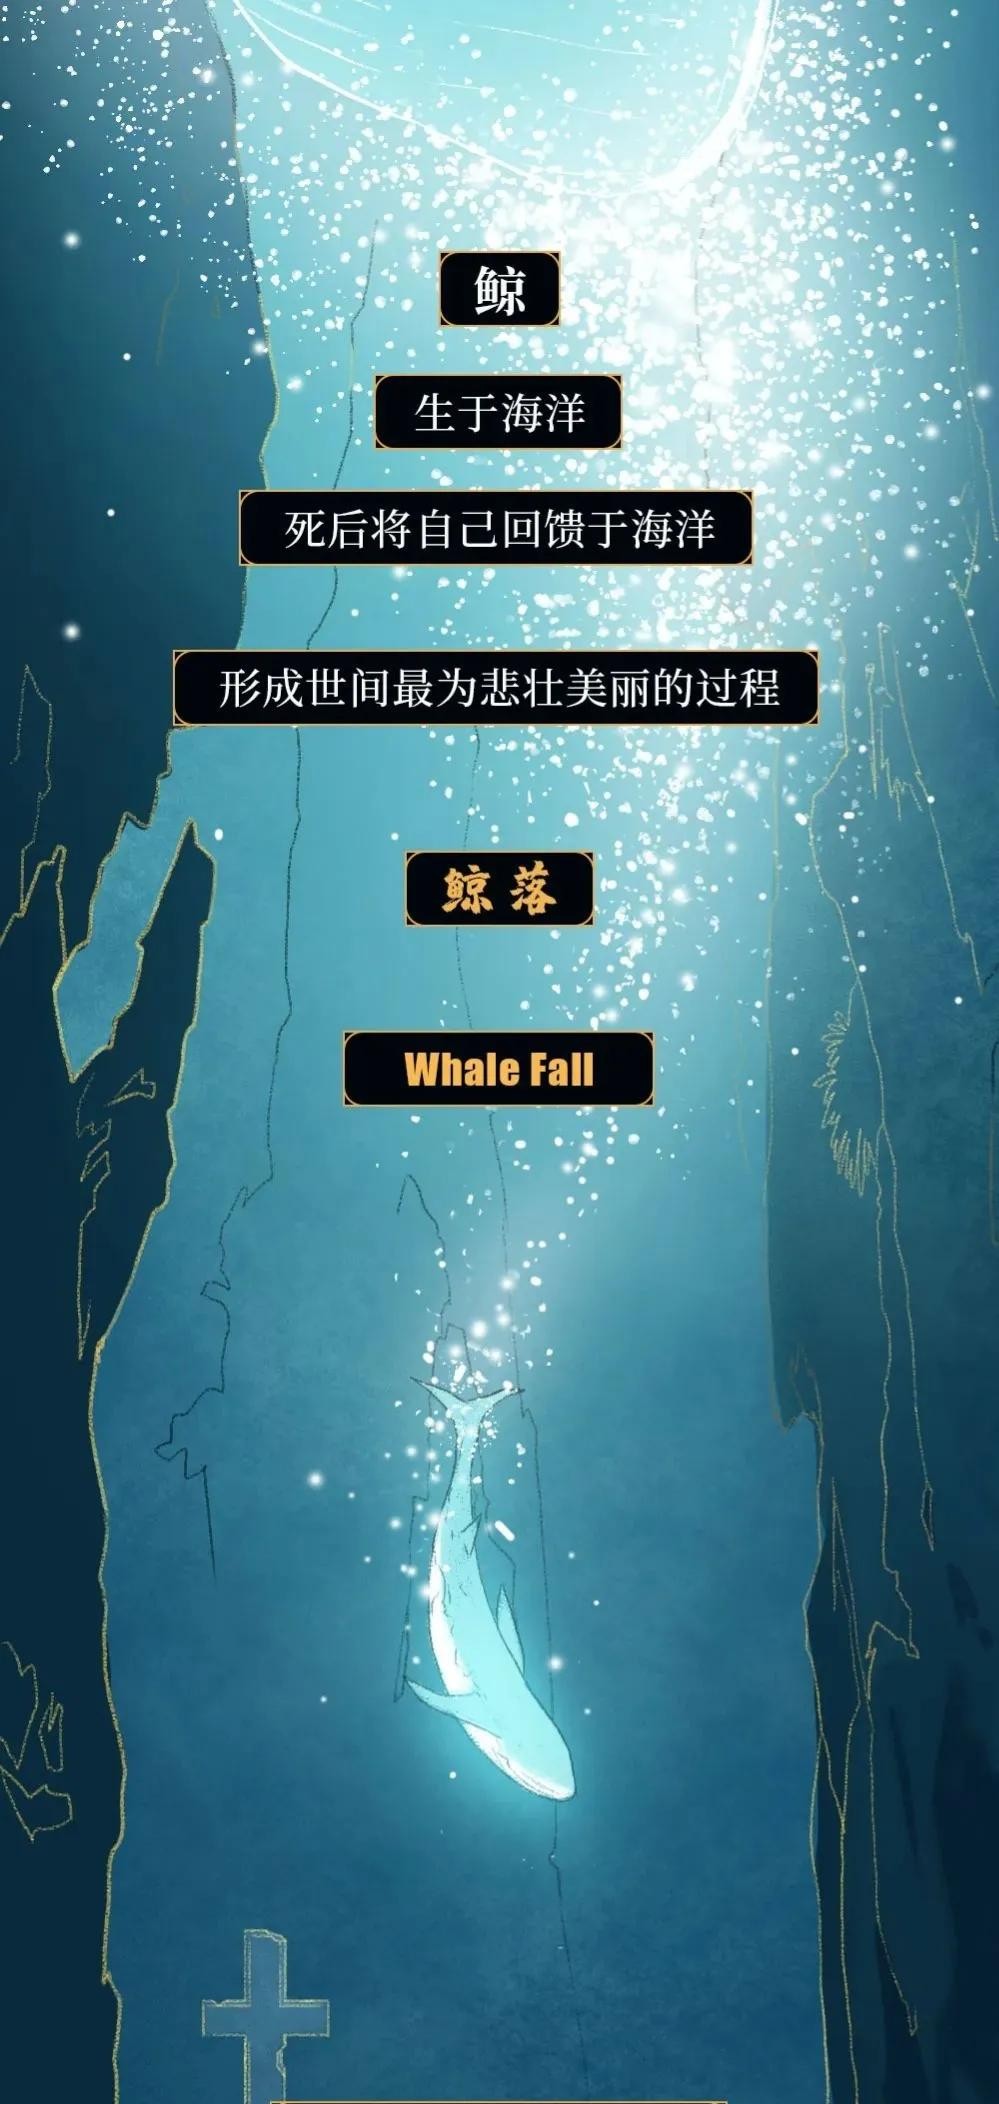 鲸鱼爆炸视频 <strong>人</strong>的尸体腐败会不会跟漂落在海边浅滩的鲸鱼一样发生“爆炸”？